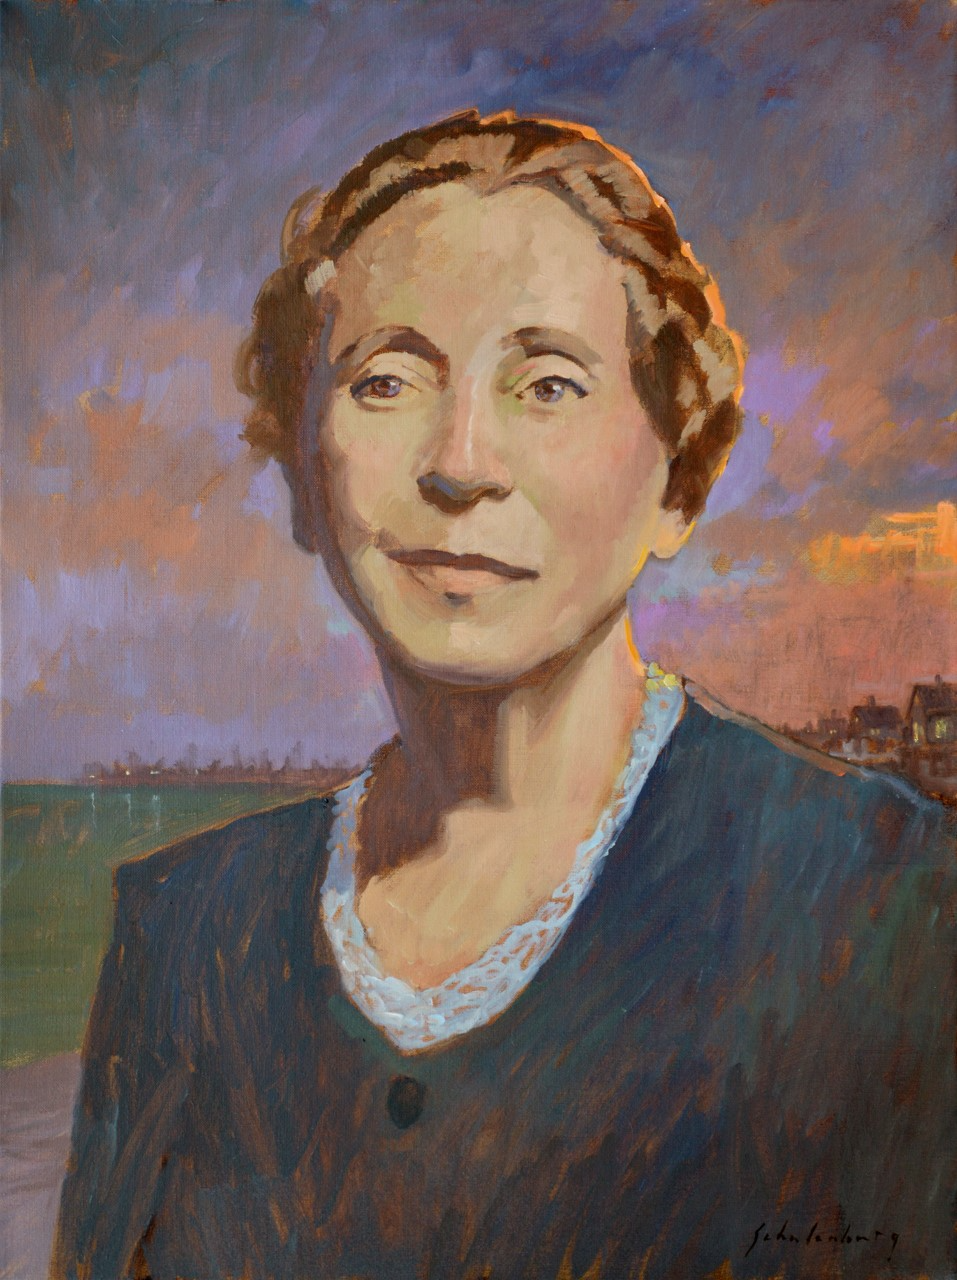 Paul Schulenberg's portrait of Provincetown arts patron Mary Heaton Vorse